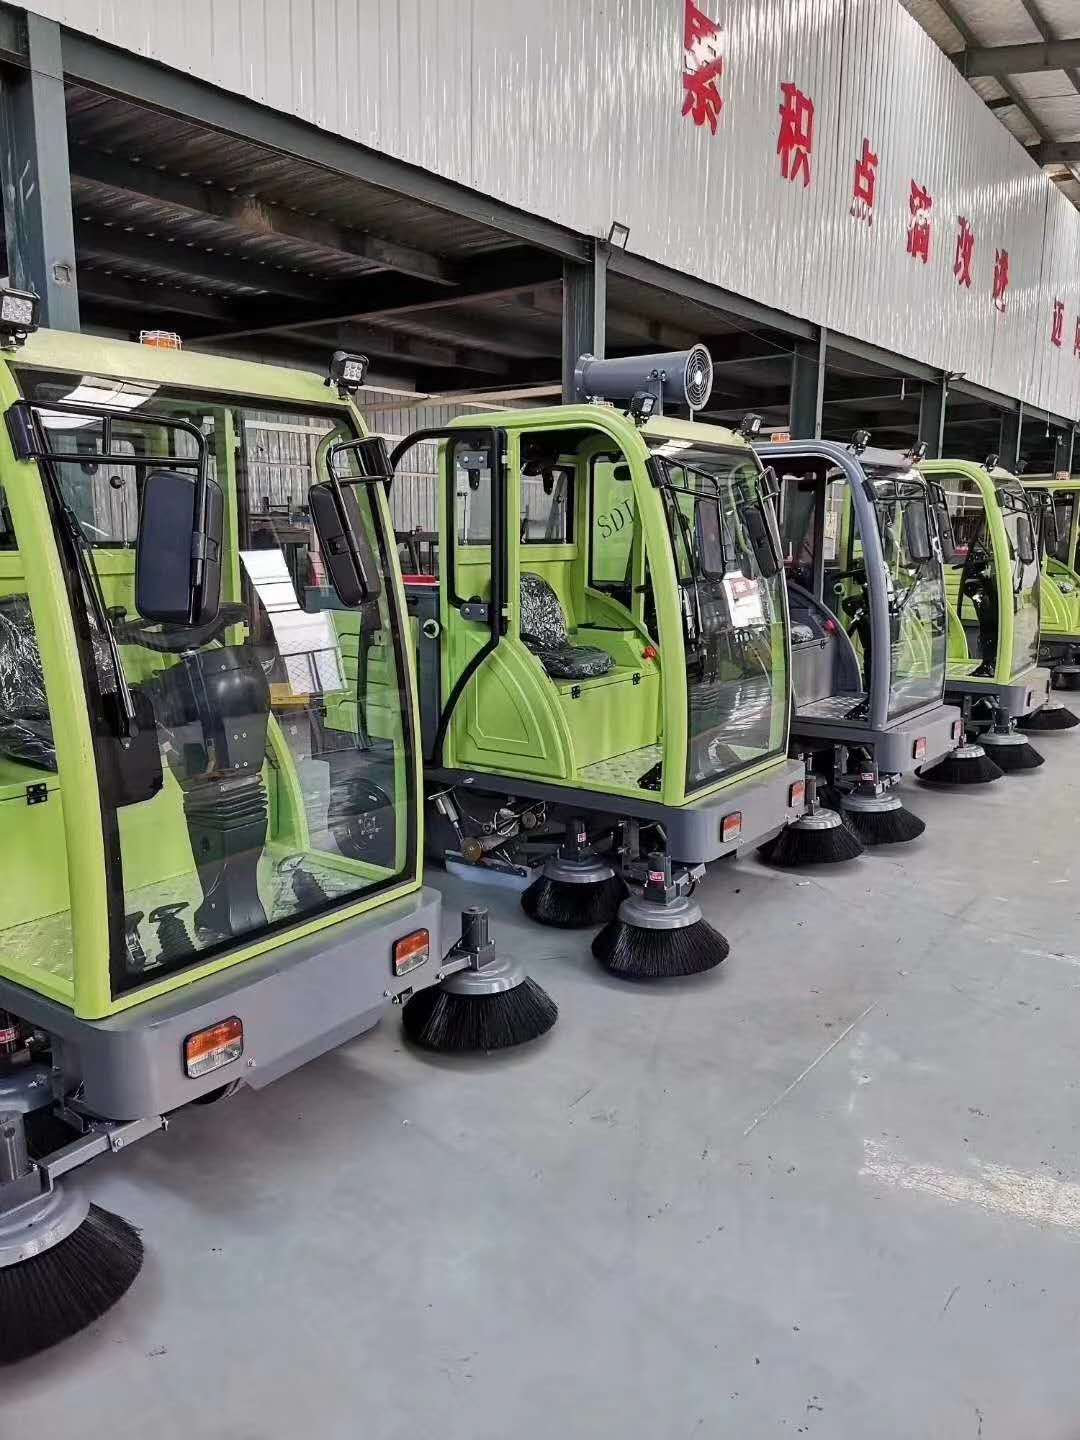 山东省临沂市蒙阴县环卫车扫地车生产厂家新款2000型号1.5kw